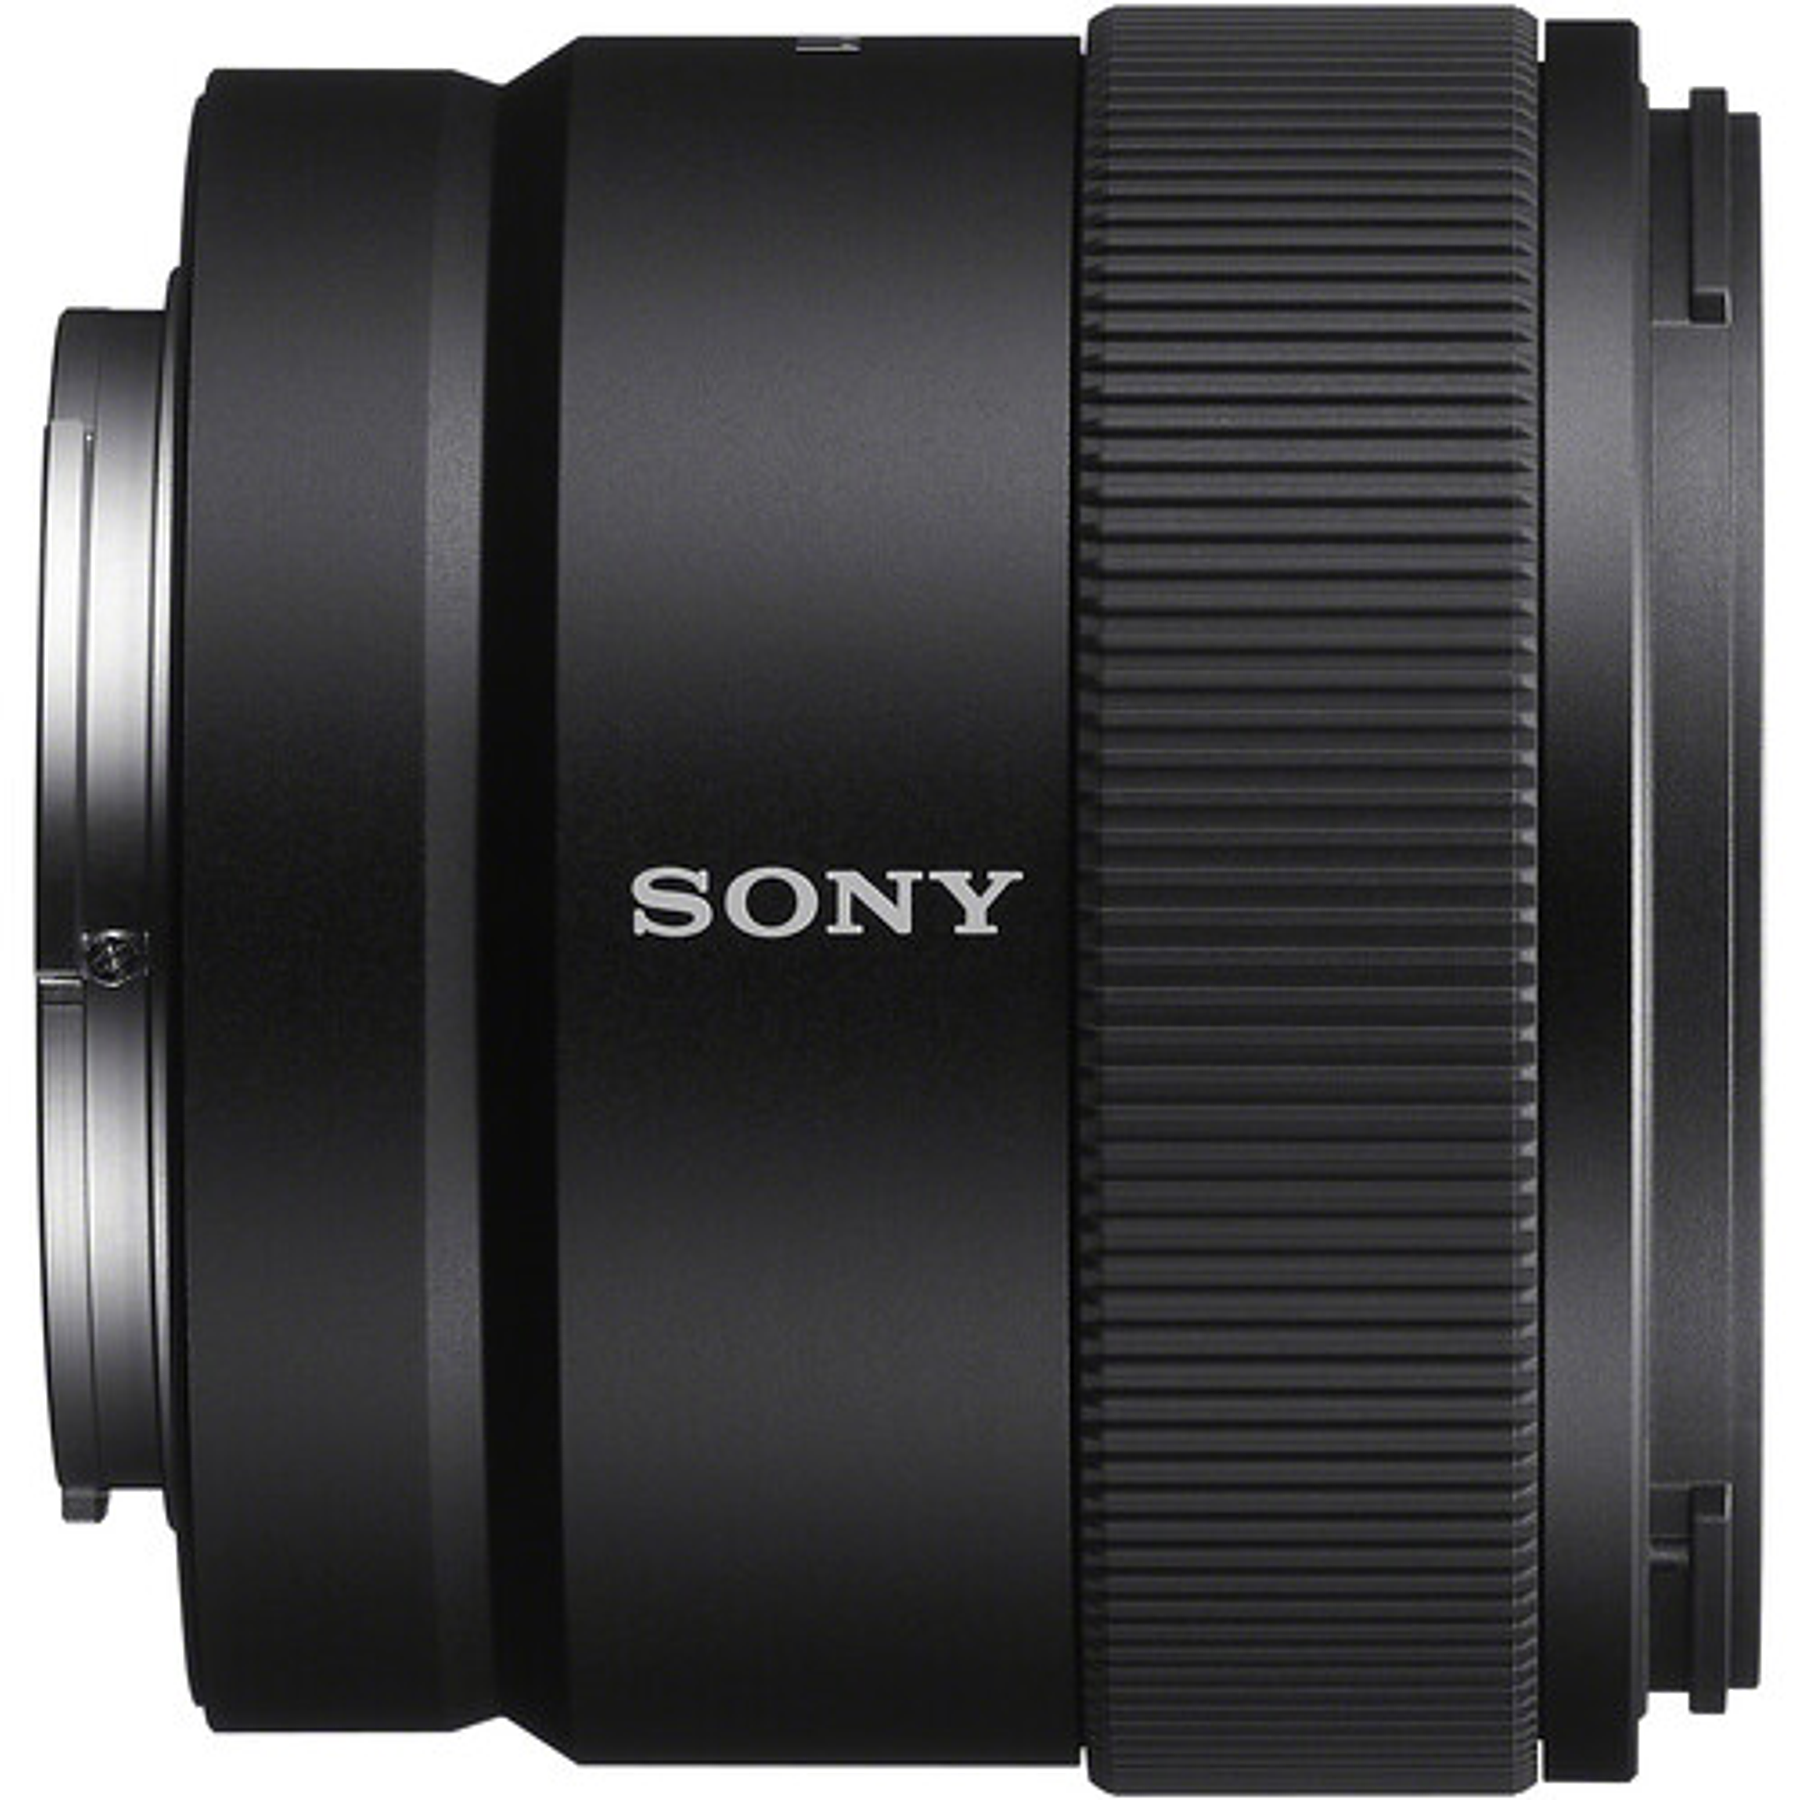 Lente Sony E 11mm f/1.8